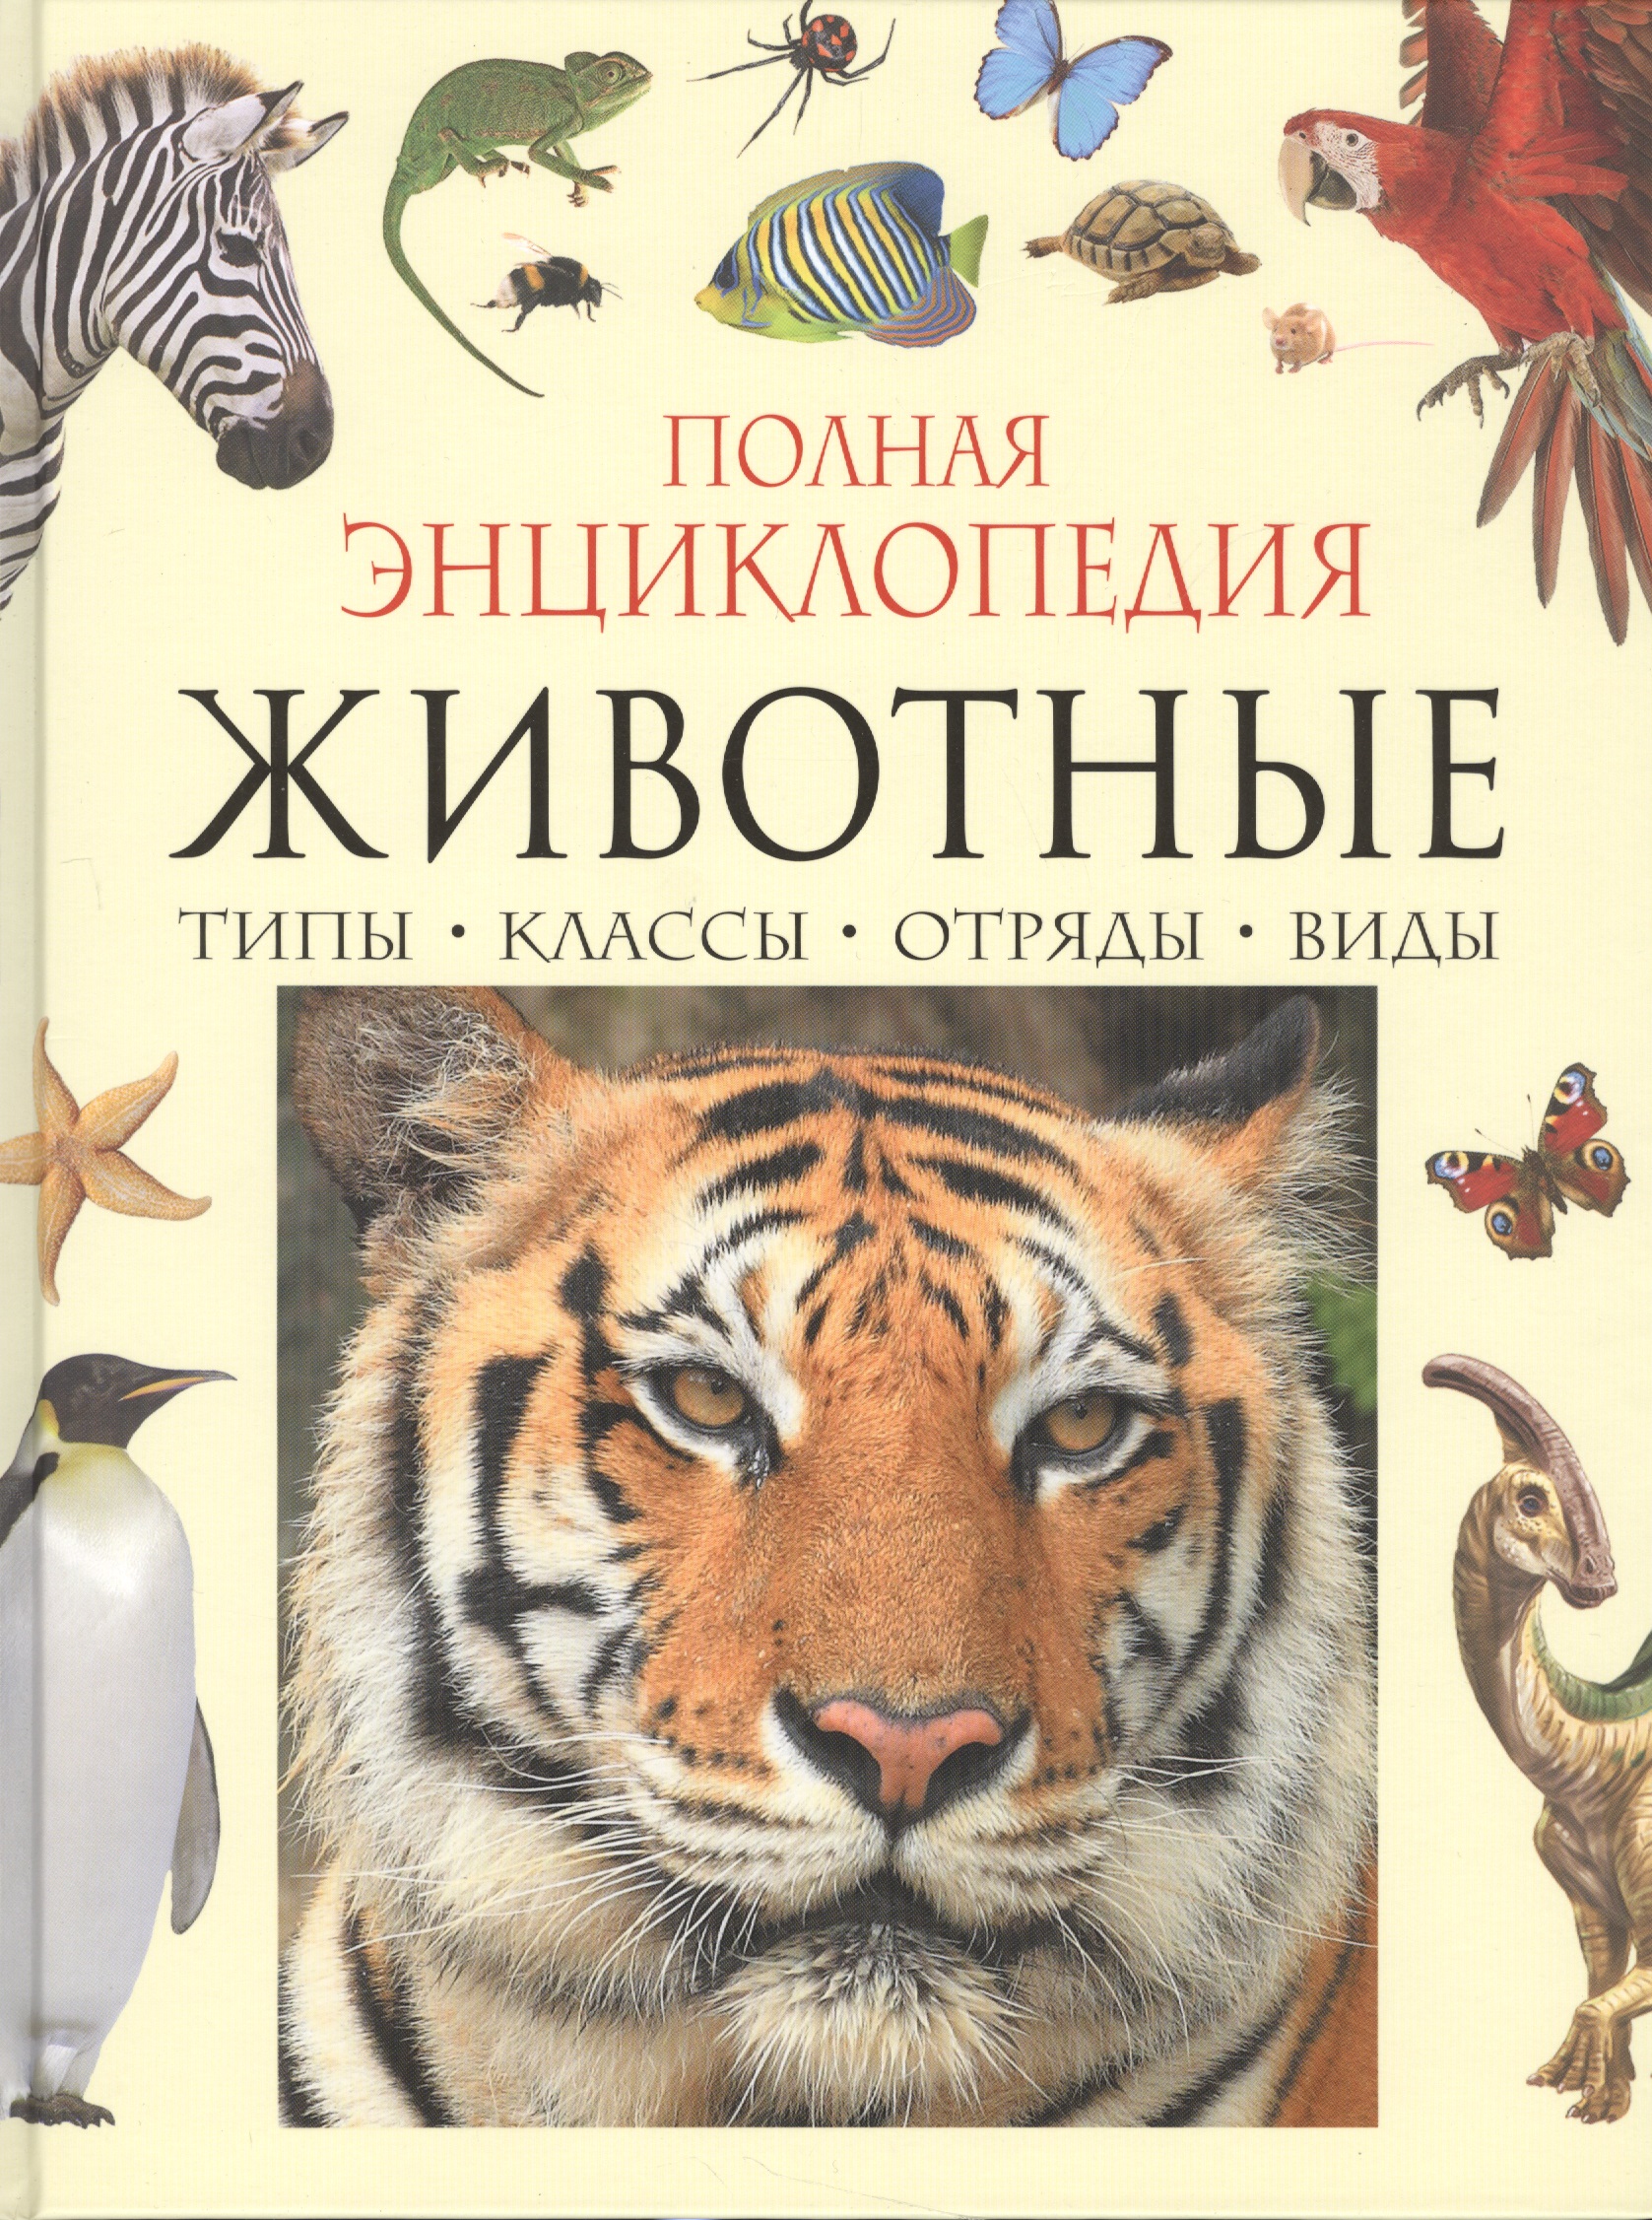 Полная энциклопедия животного мира энциклопедия животного мира все о животных